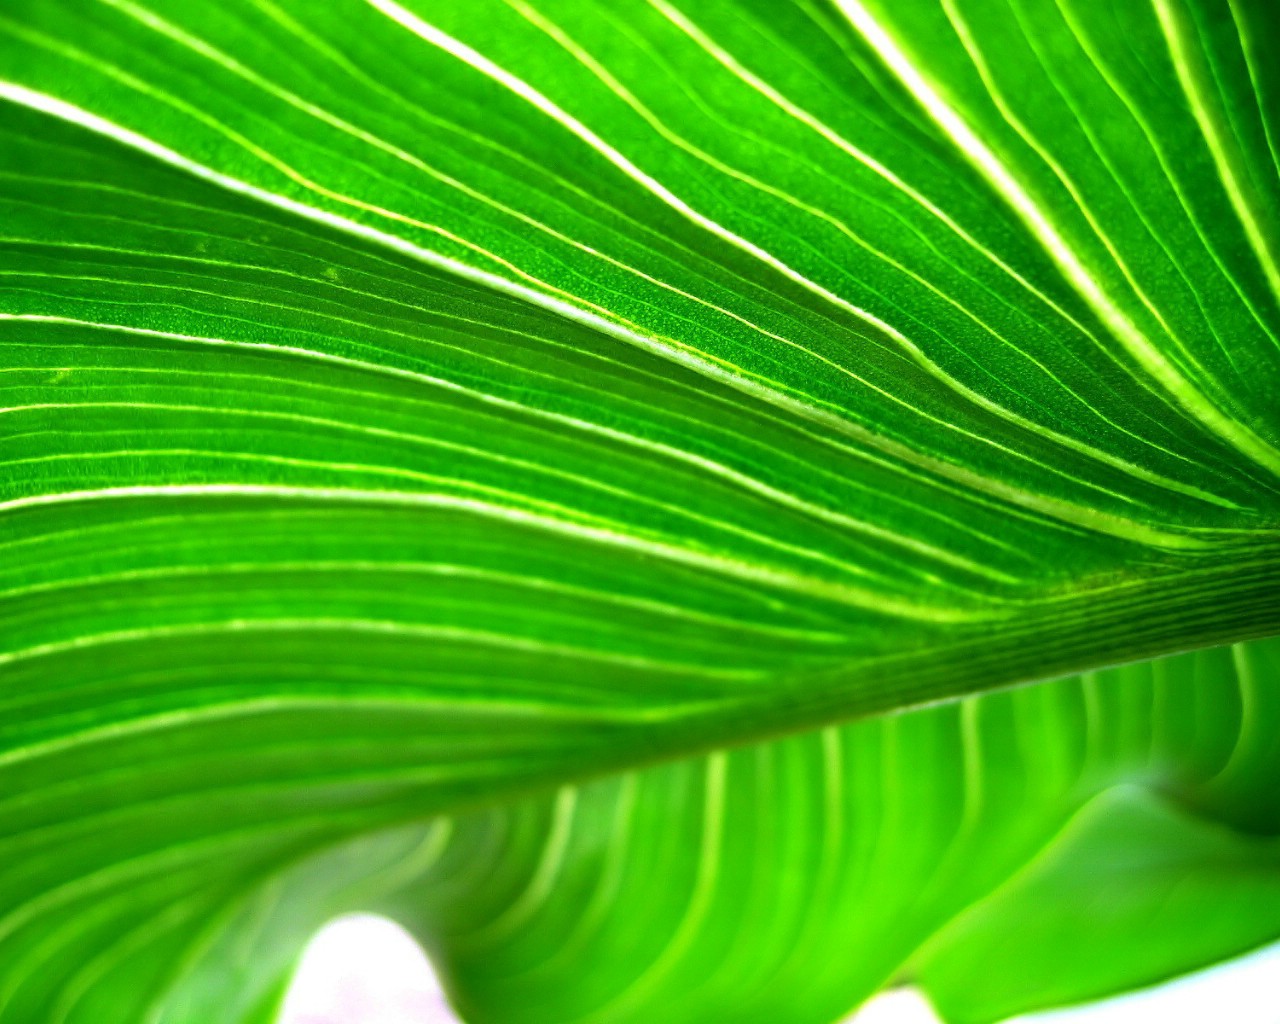 壁纸1280x1024高清晰绿色植物系列 壁纸18壁纸 高清晰绿色植物系列壁纸 高清晰绿色植物系列图片 高清晰绿色植物系列素材 动物壁纸 动物图库 动物图片素材桌面壁纸